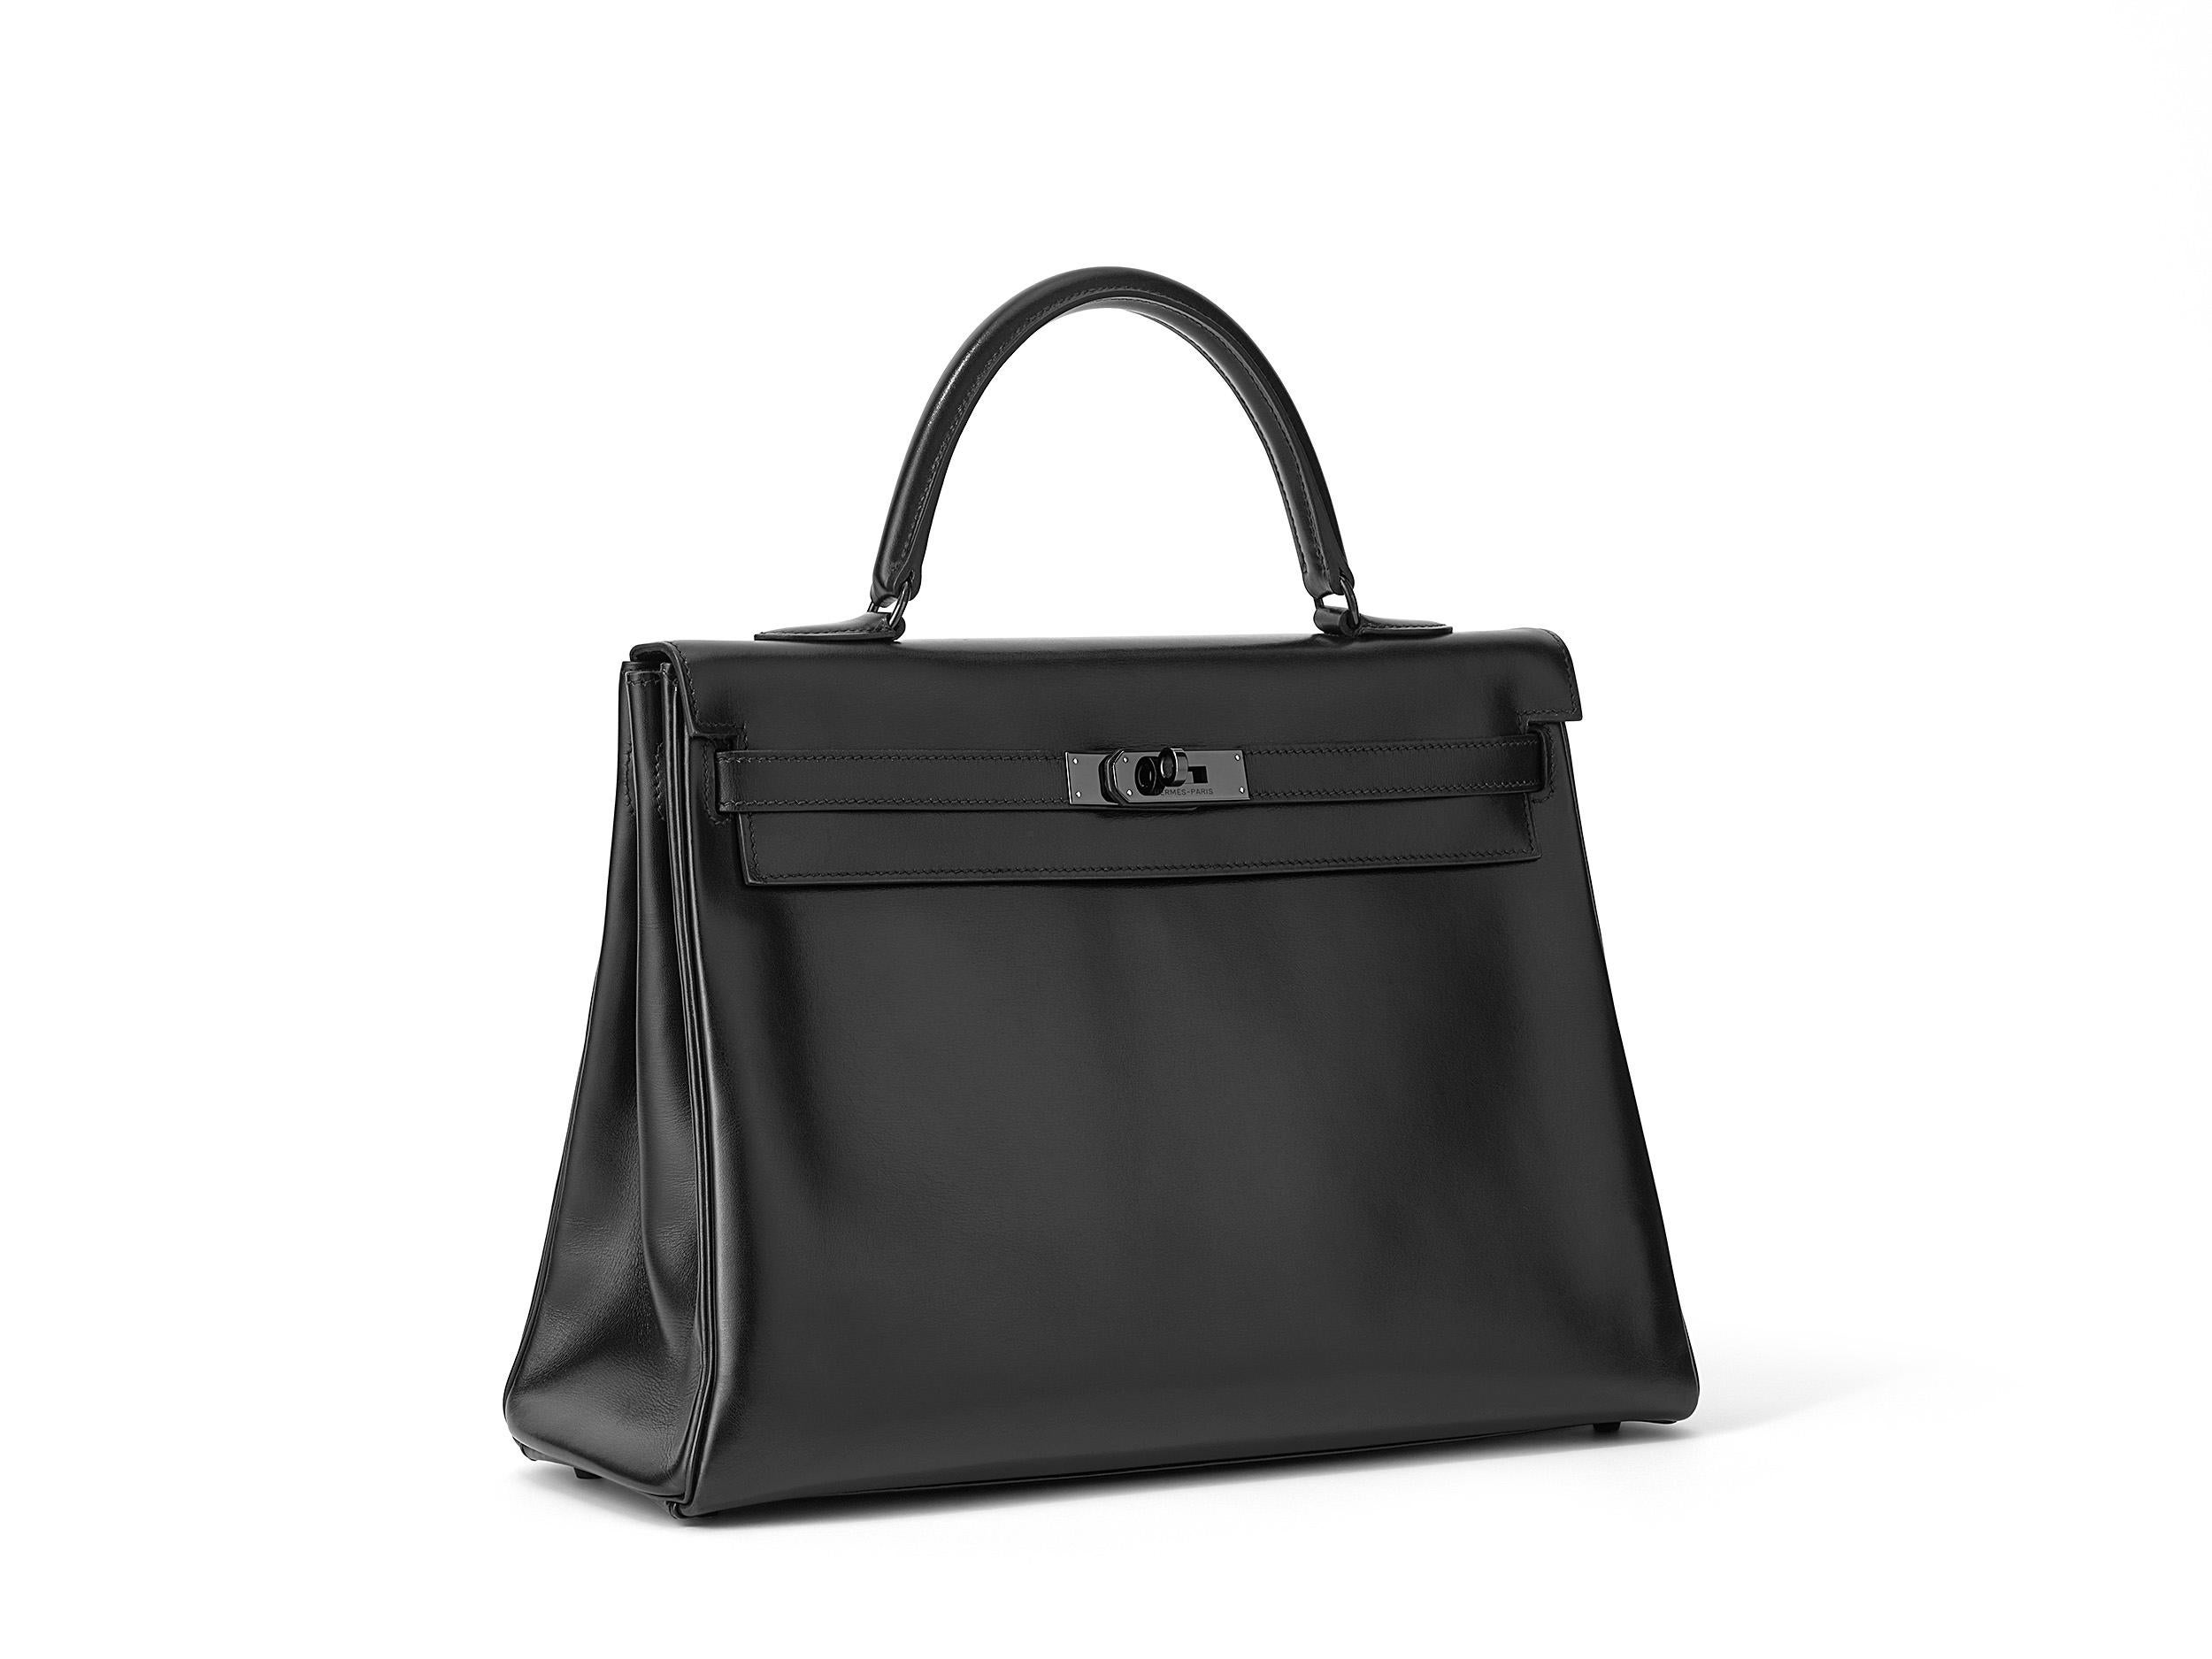 Hermès Kelly So Black 35 aus Noir- und Boxcalf-Leder mit schwarzen Beschlägen. Die Tasche war bereits im Hermès Spa und ist in einem guten Zustand mit kleinen Flecken auf der Vorder- und Rückseite der Tasche. Sichtbare Spuren auf dem Boden, an den